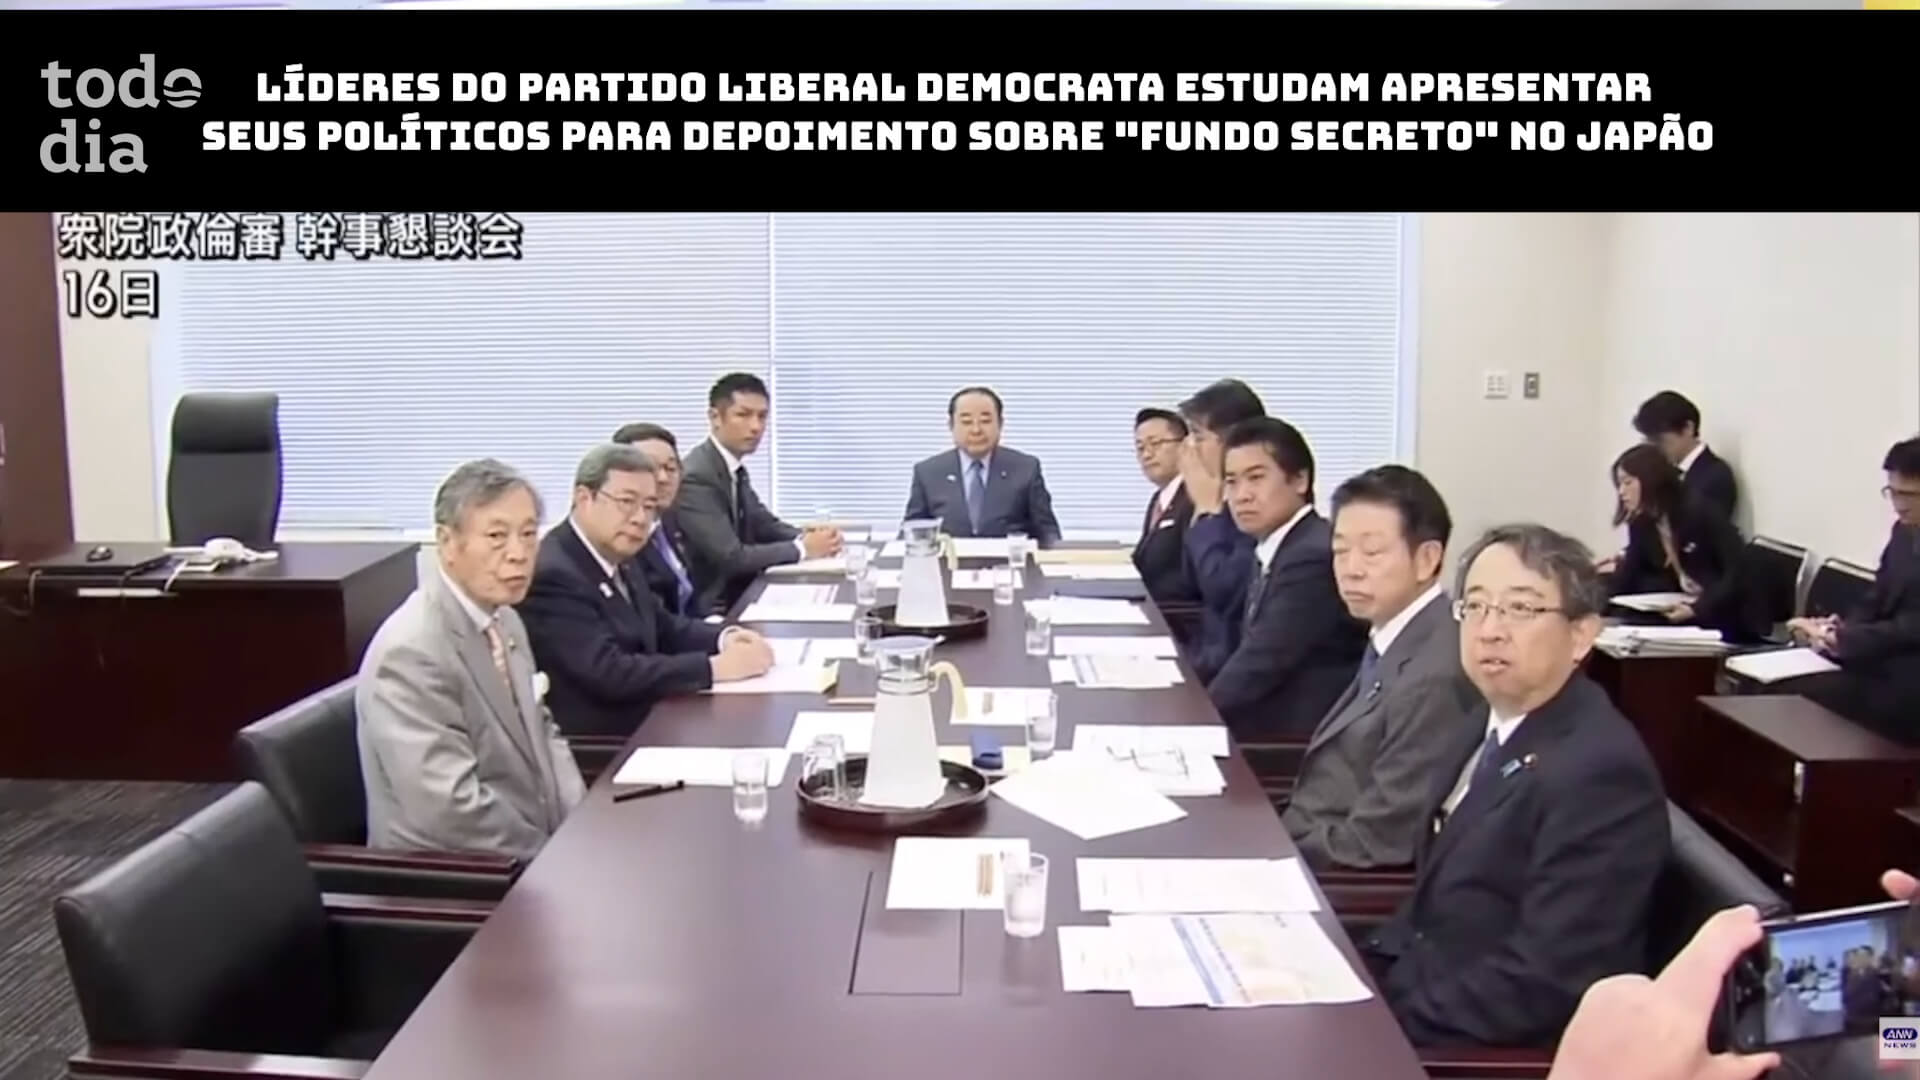 Líderes do Partido Liberal Democrata estudam apresentar seus políticos para depoimento sobre “fundo secreto” no Japão